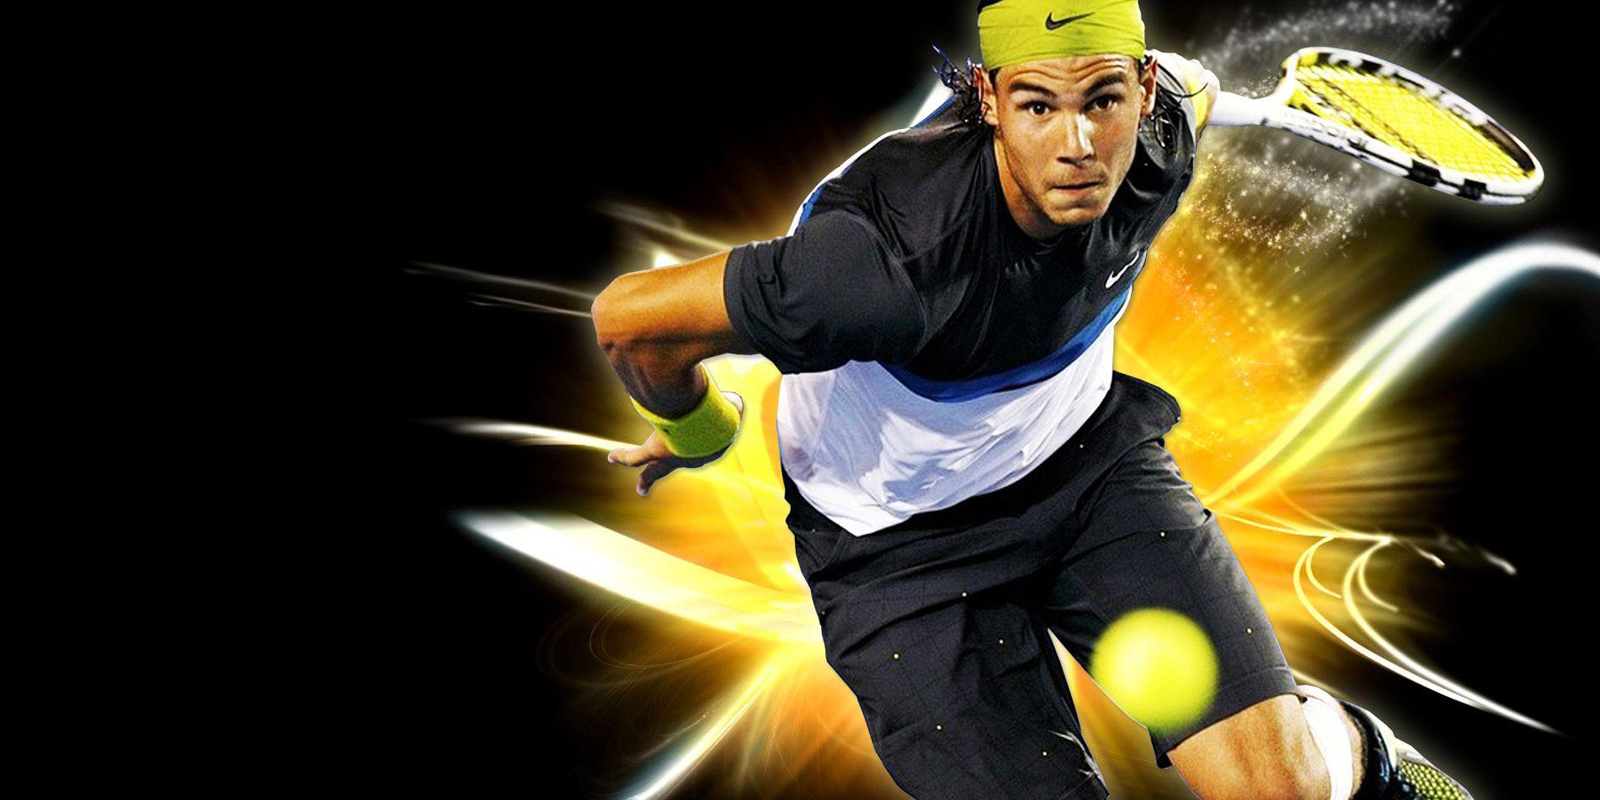 Nadal tay vợt vĩ đại nhất lịch sử, hay người hùng vượt qua nghịch cảnh? - 6